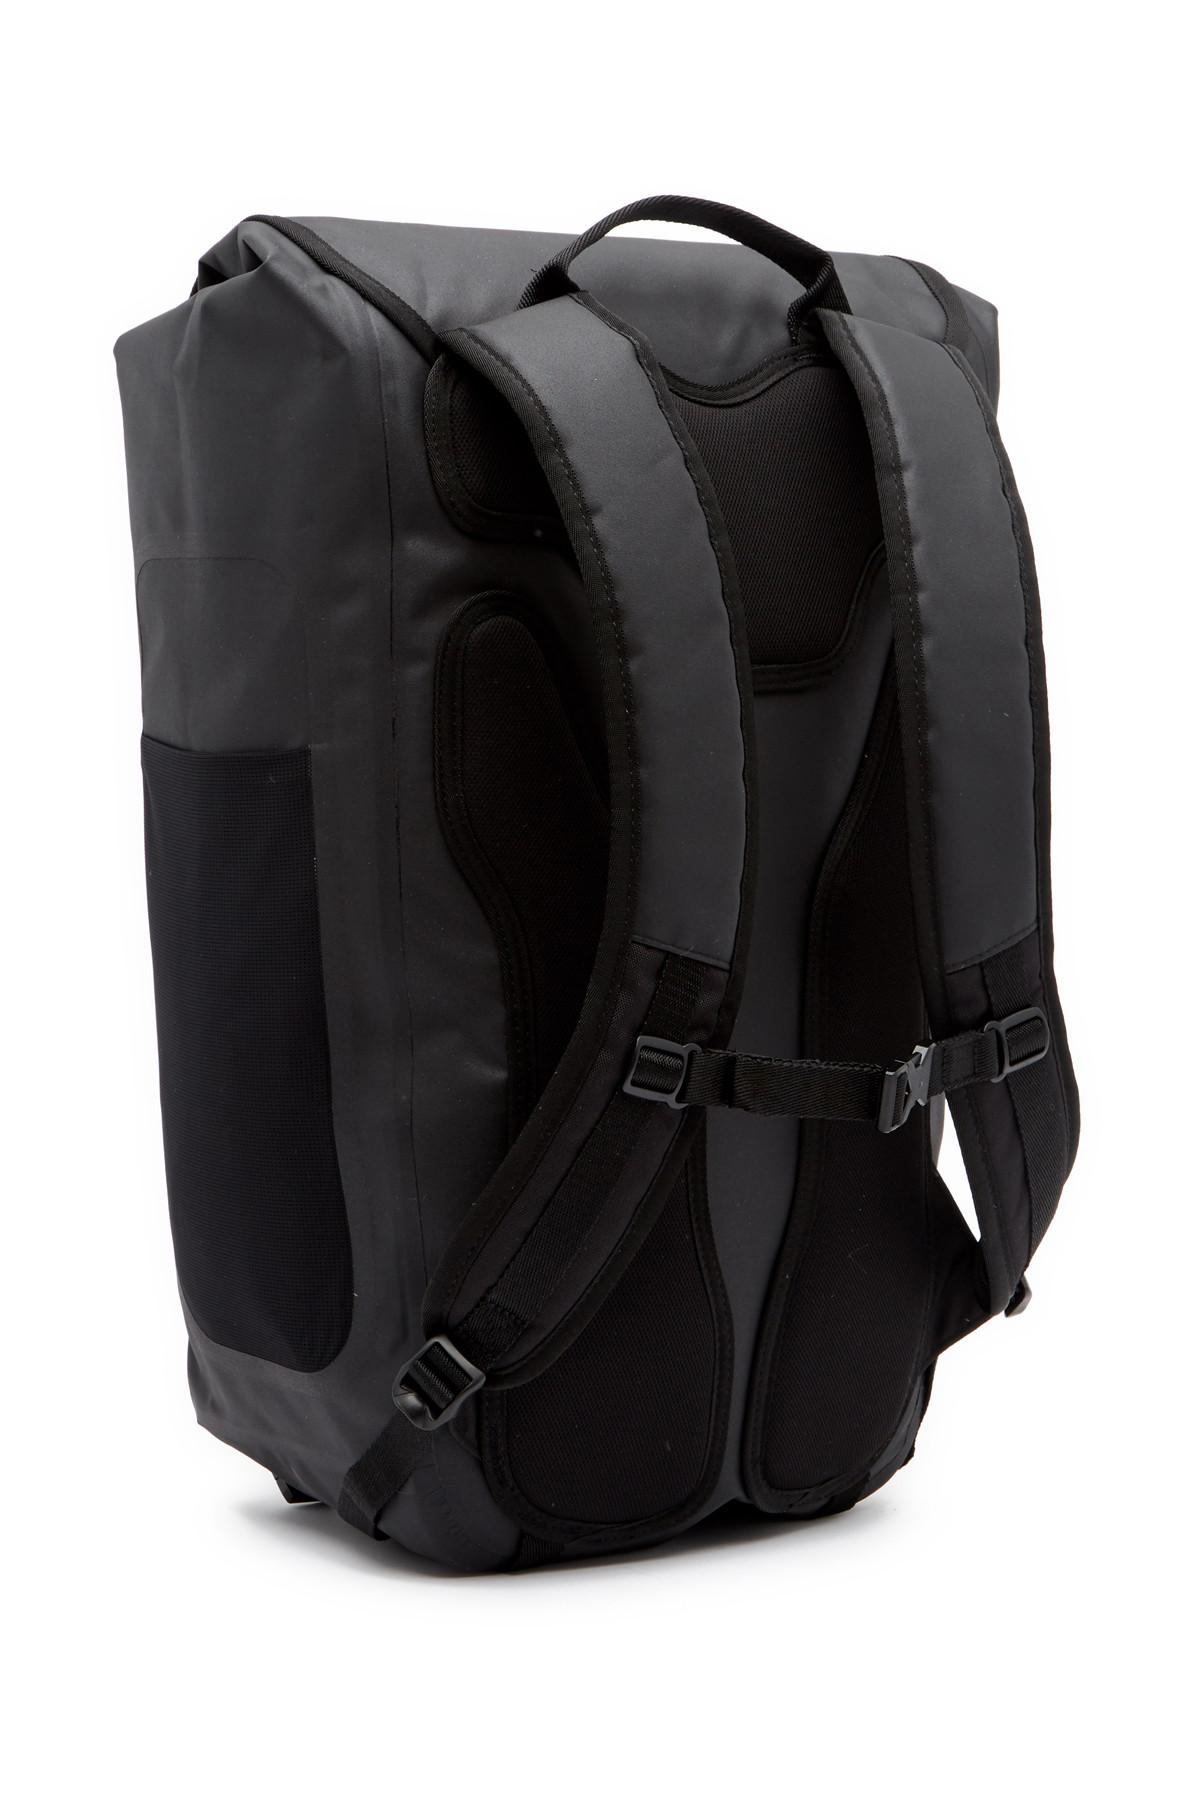 Hurley Wet/dry Elite Backpack in Black/Black (Black) for Men | Lyst